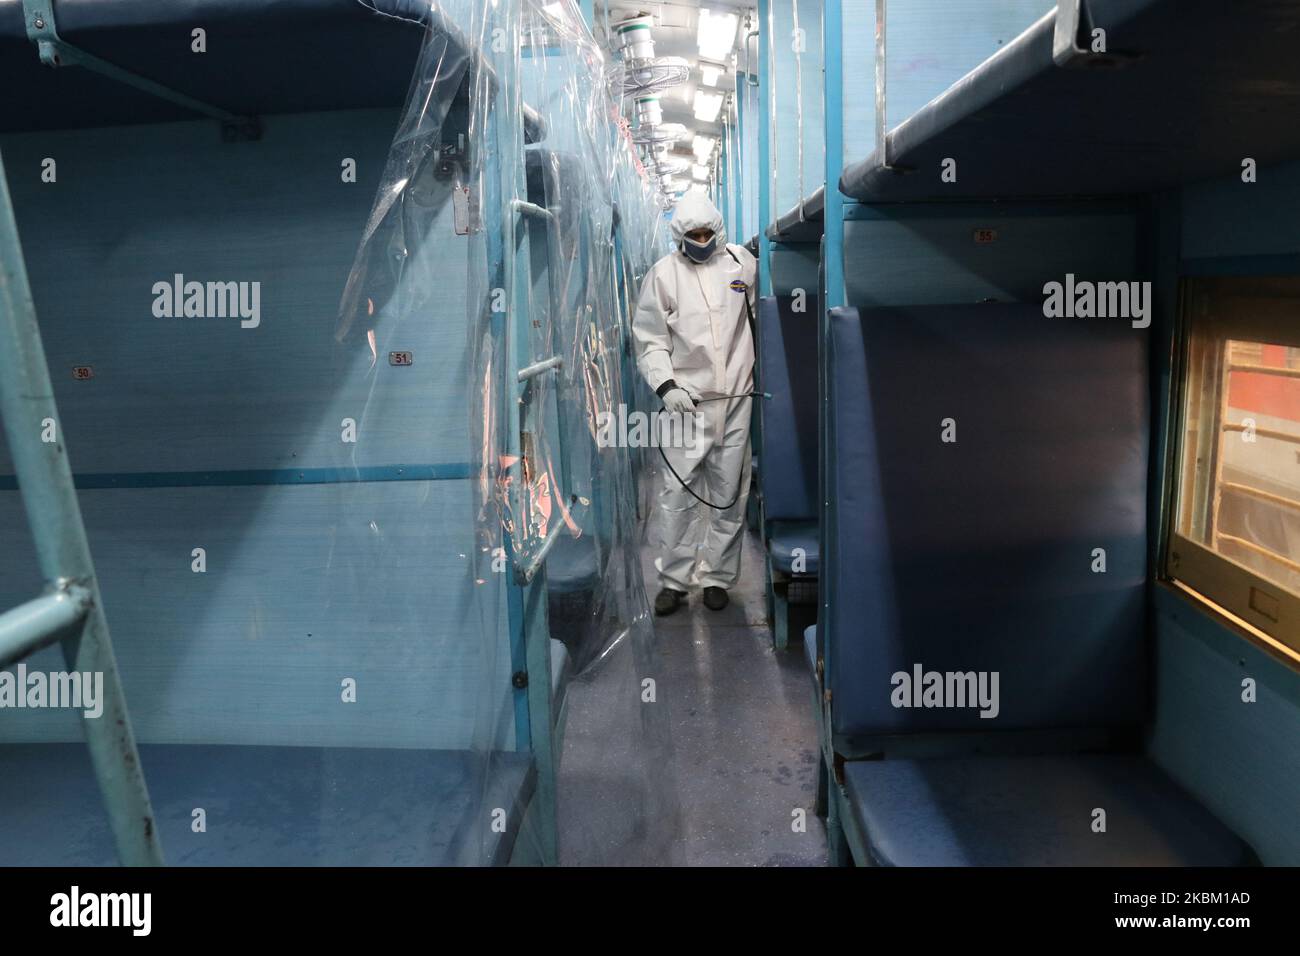 Ein Arbeiter in Schutzkleidung sprüht Desinfektionsmittel in einem Zugwagen, der in eine Isolationsstation für COVID-19-Patienten umgewandelt wurde, während der landesweiten 21-tägigen Sperre, die aufgrund der Besorgnis über die Ausbreitung des Coronavirus in Howrah in der Nähe von Kalkutta City, Indien, am Sonntag, den 5. April 2020 stattfand. Eine landesweite Sperrung, die von Premierminister Narendra Modi angekündigt wurde, führte zu einer Massenflucht von Wanderarbeitern aus den Städten in ihre Dörfer, was Befürchtungen aufrief, dass das Virus auf dem Land gelangten könnte, wo die Gesundheitseinrichtungen begrenzt sind. Experten sagen, dass die lokale Verbreitung in einem Land, in dem mehrere zehn Millionen Menschen leben, unvermeidlich ist Stockfoto